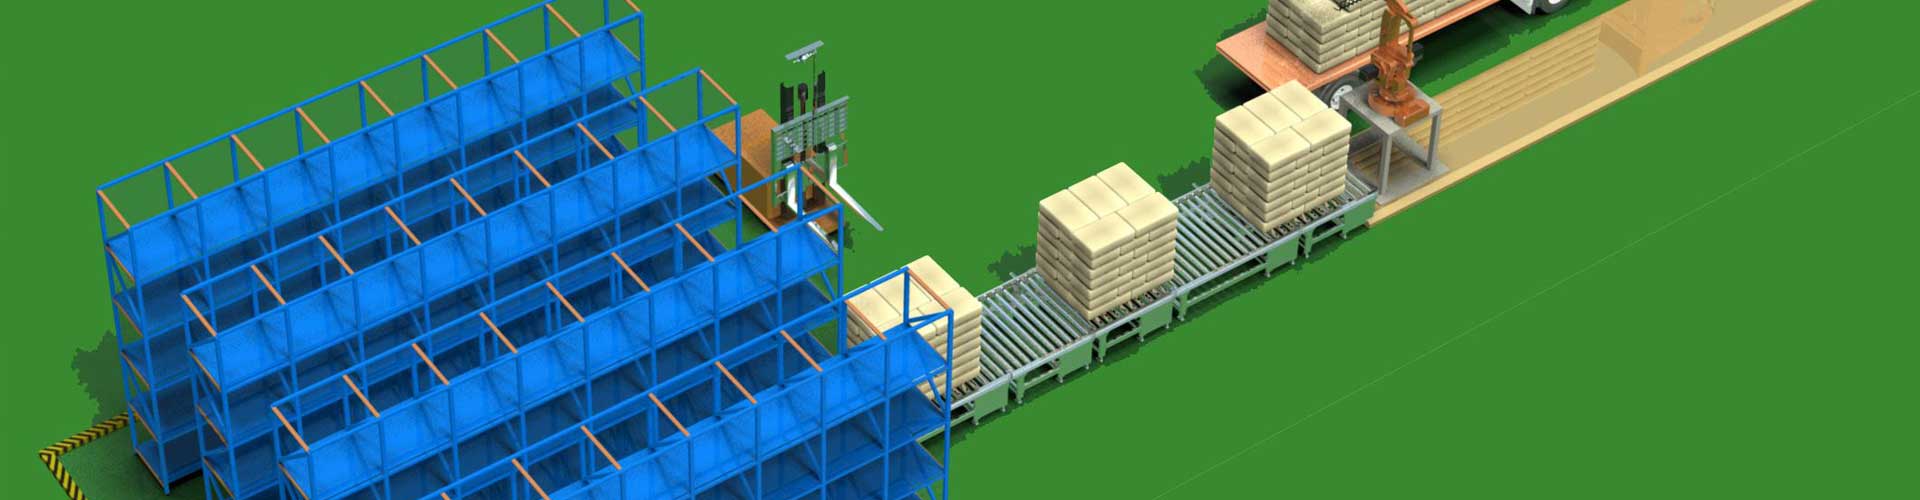 台州自动化立体仓库货架的设计立体库 